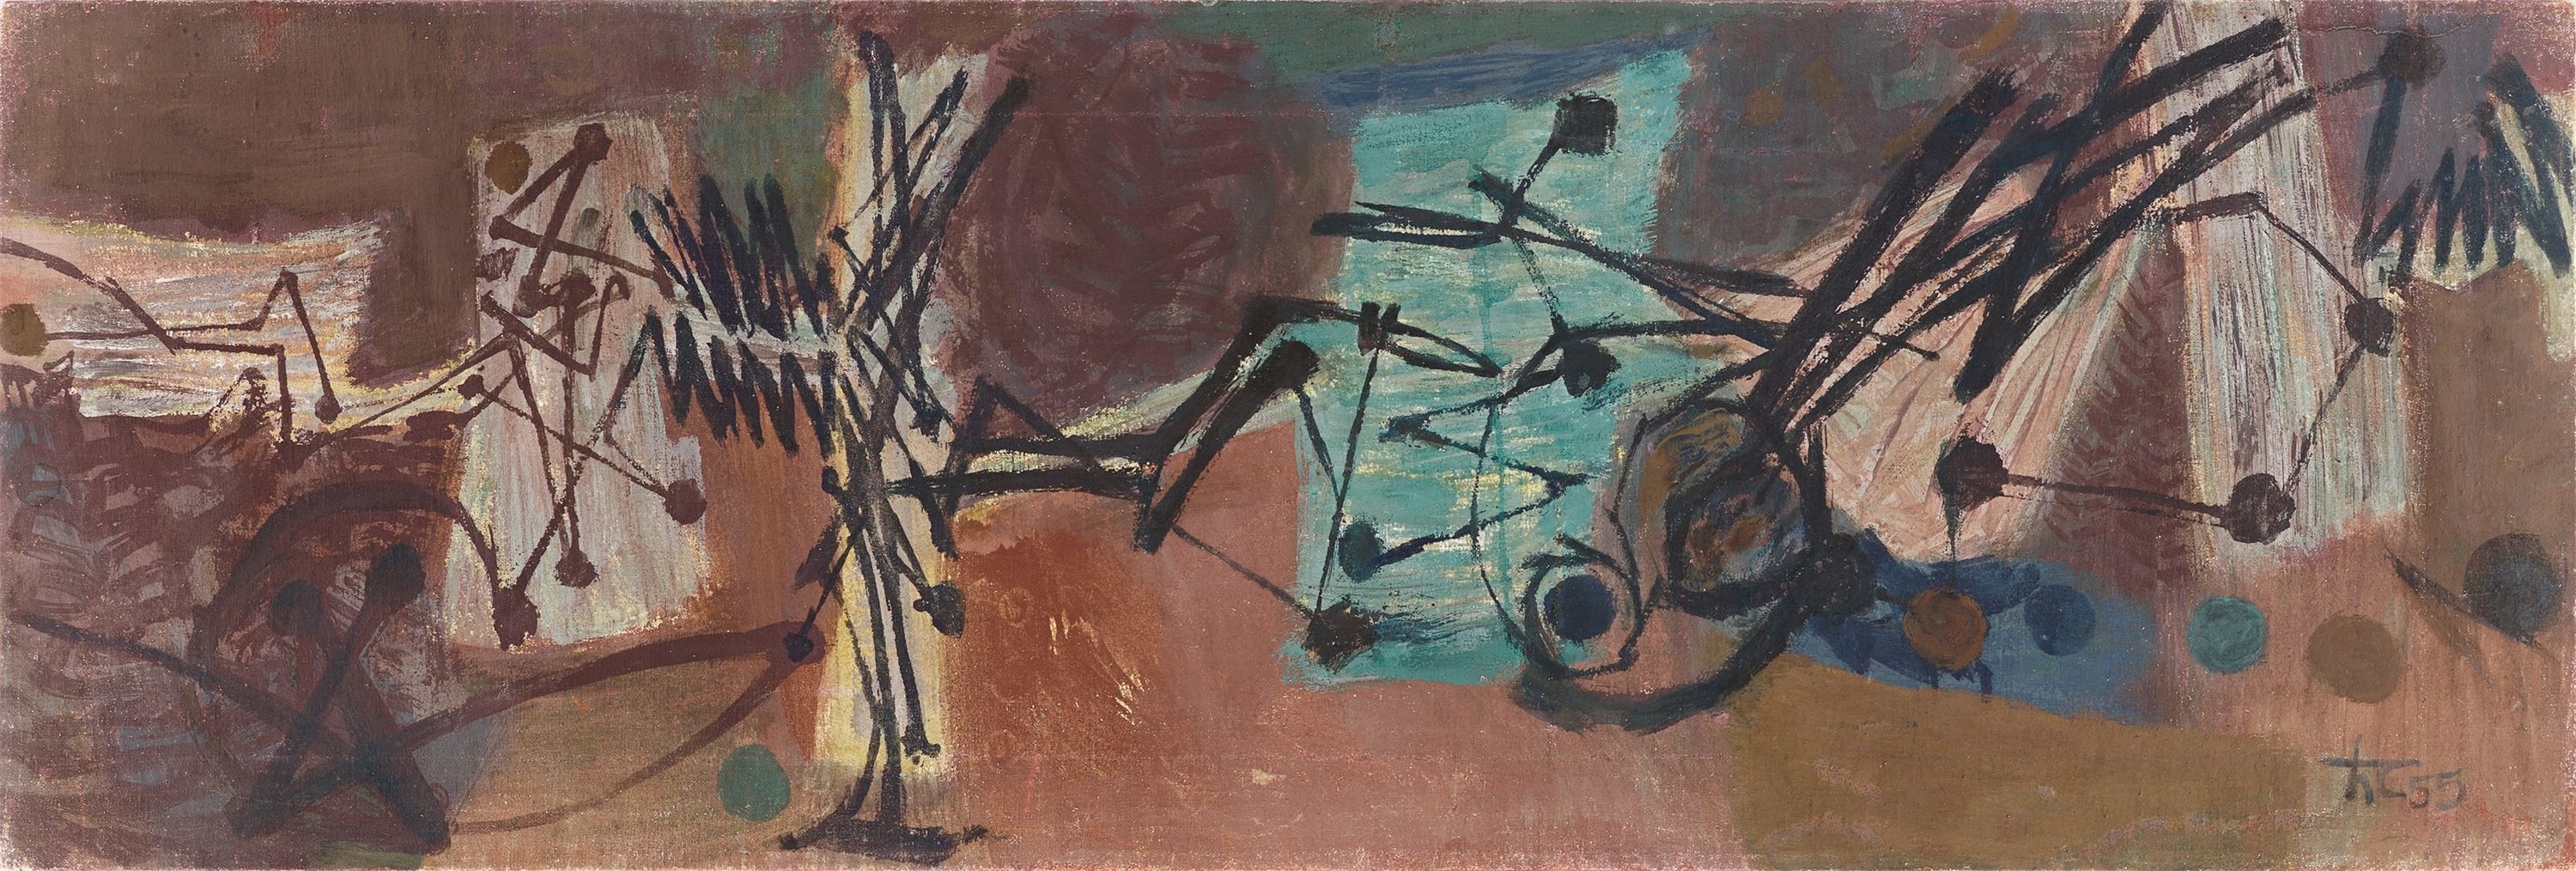 ”Trommelwirbel”. by Hann Trier, 1955